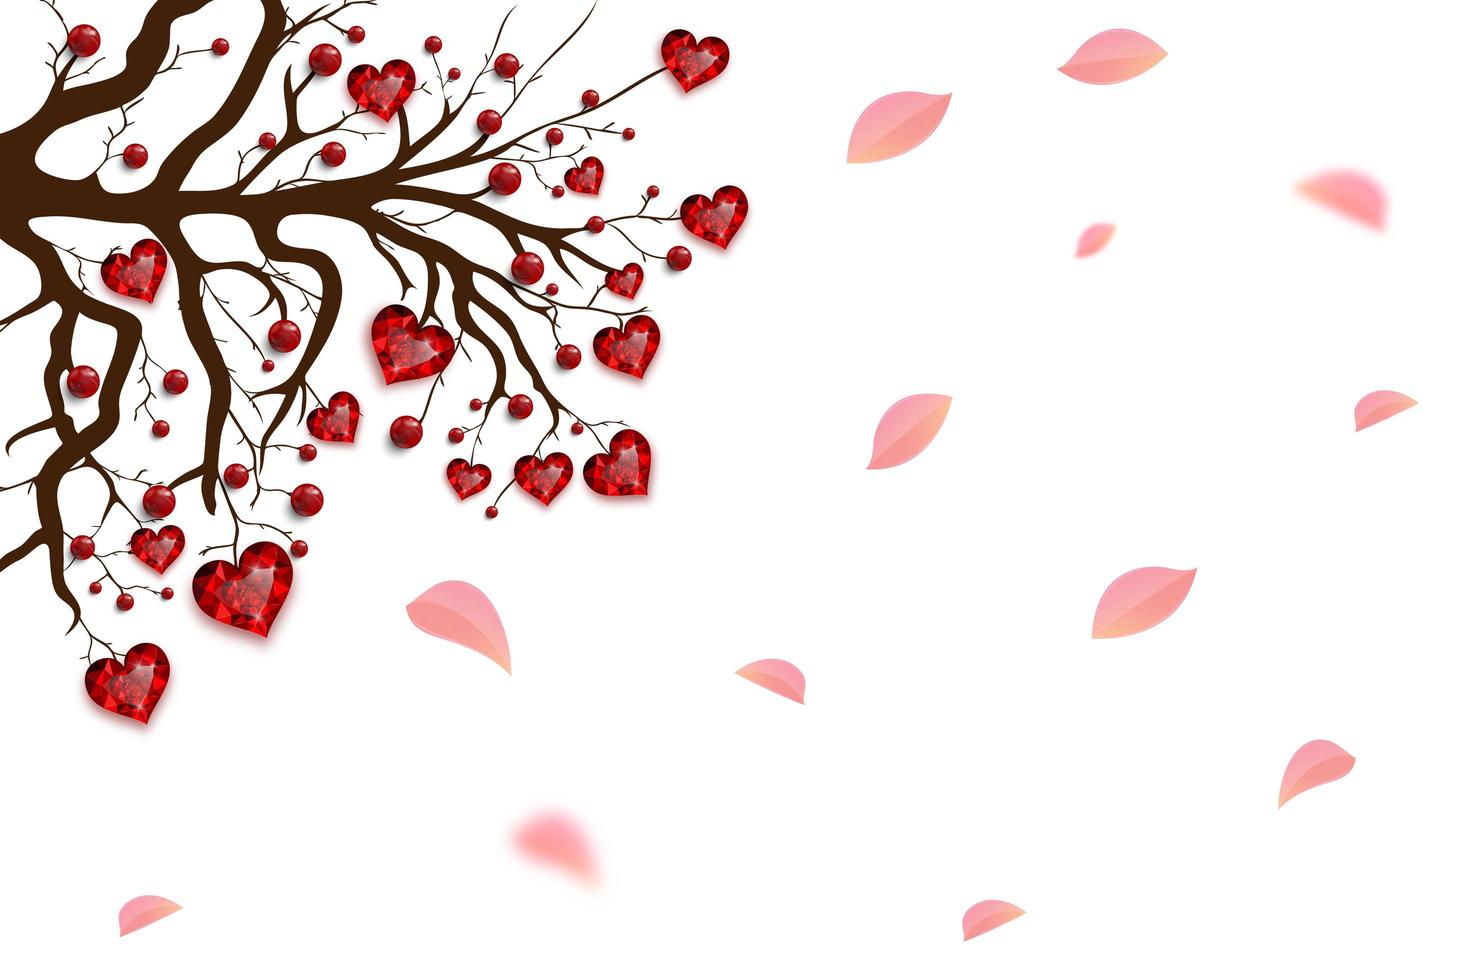 fröhlichen Valentinstag. Baum mit roten Herzen und Perlen verziert. Rubinjuwel. Valentinskarte. vektor